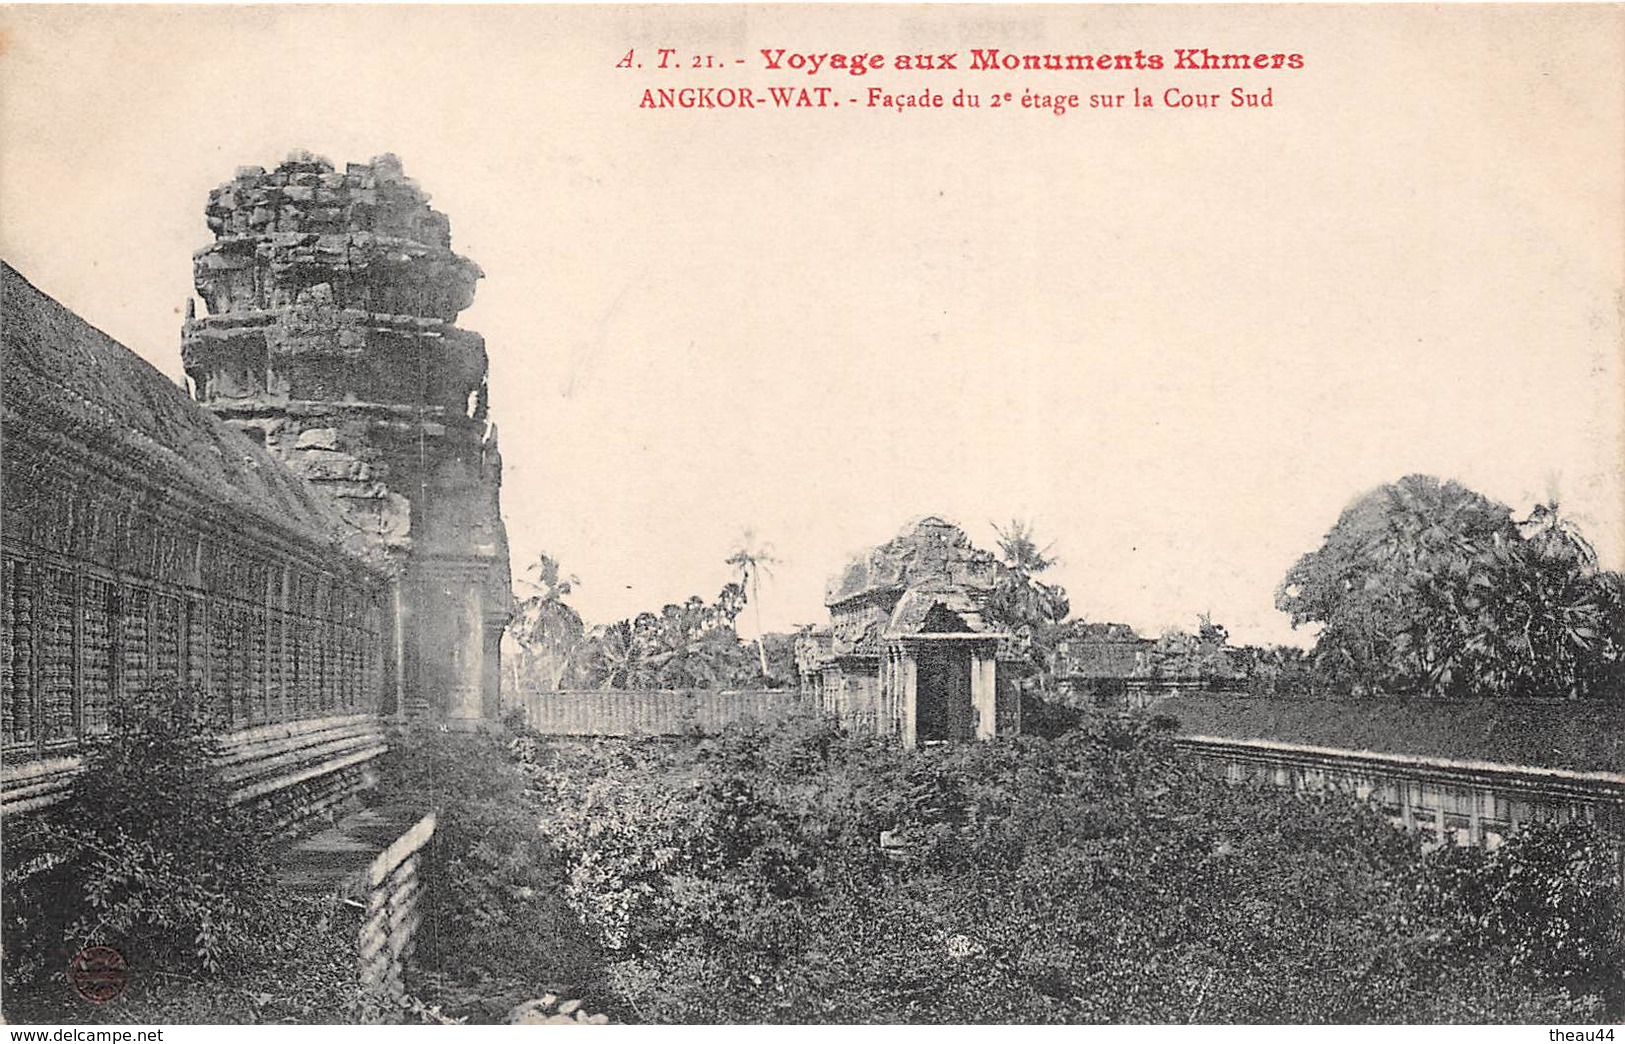 ¤¤  -  CAMBODGE   -   ANGKOR-VAT  -  Façade Du 2e étage Sur La Cour Sud  -  Voyage Aux Monuments Khmers - Cambodge